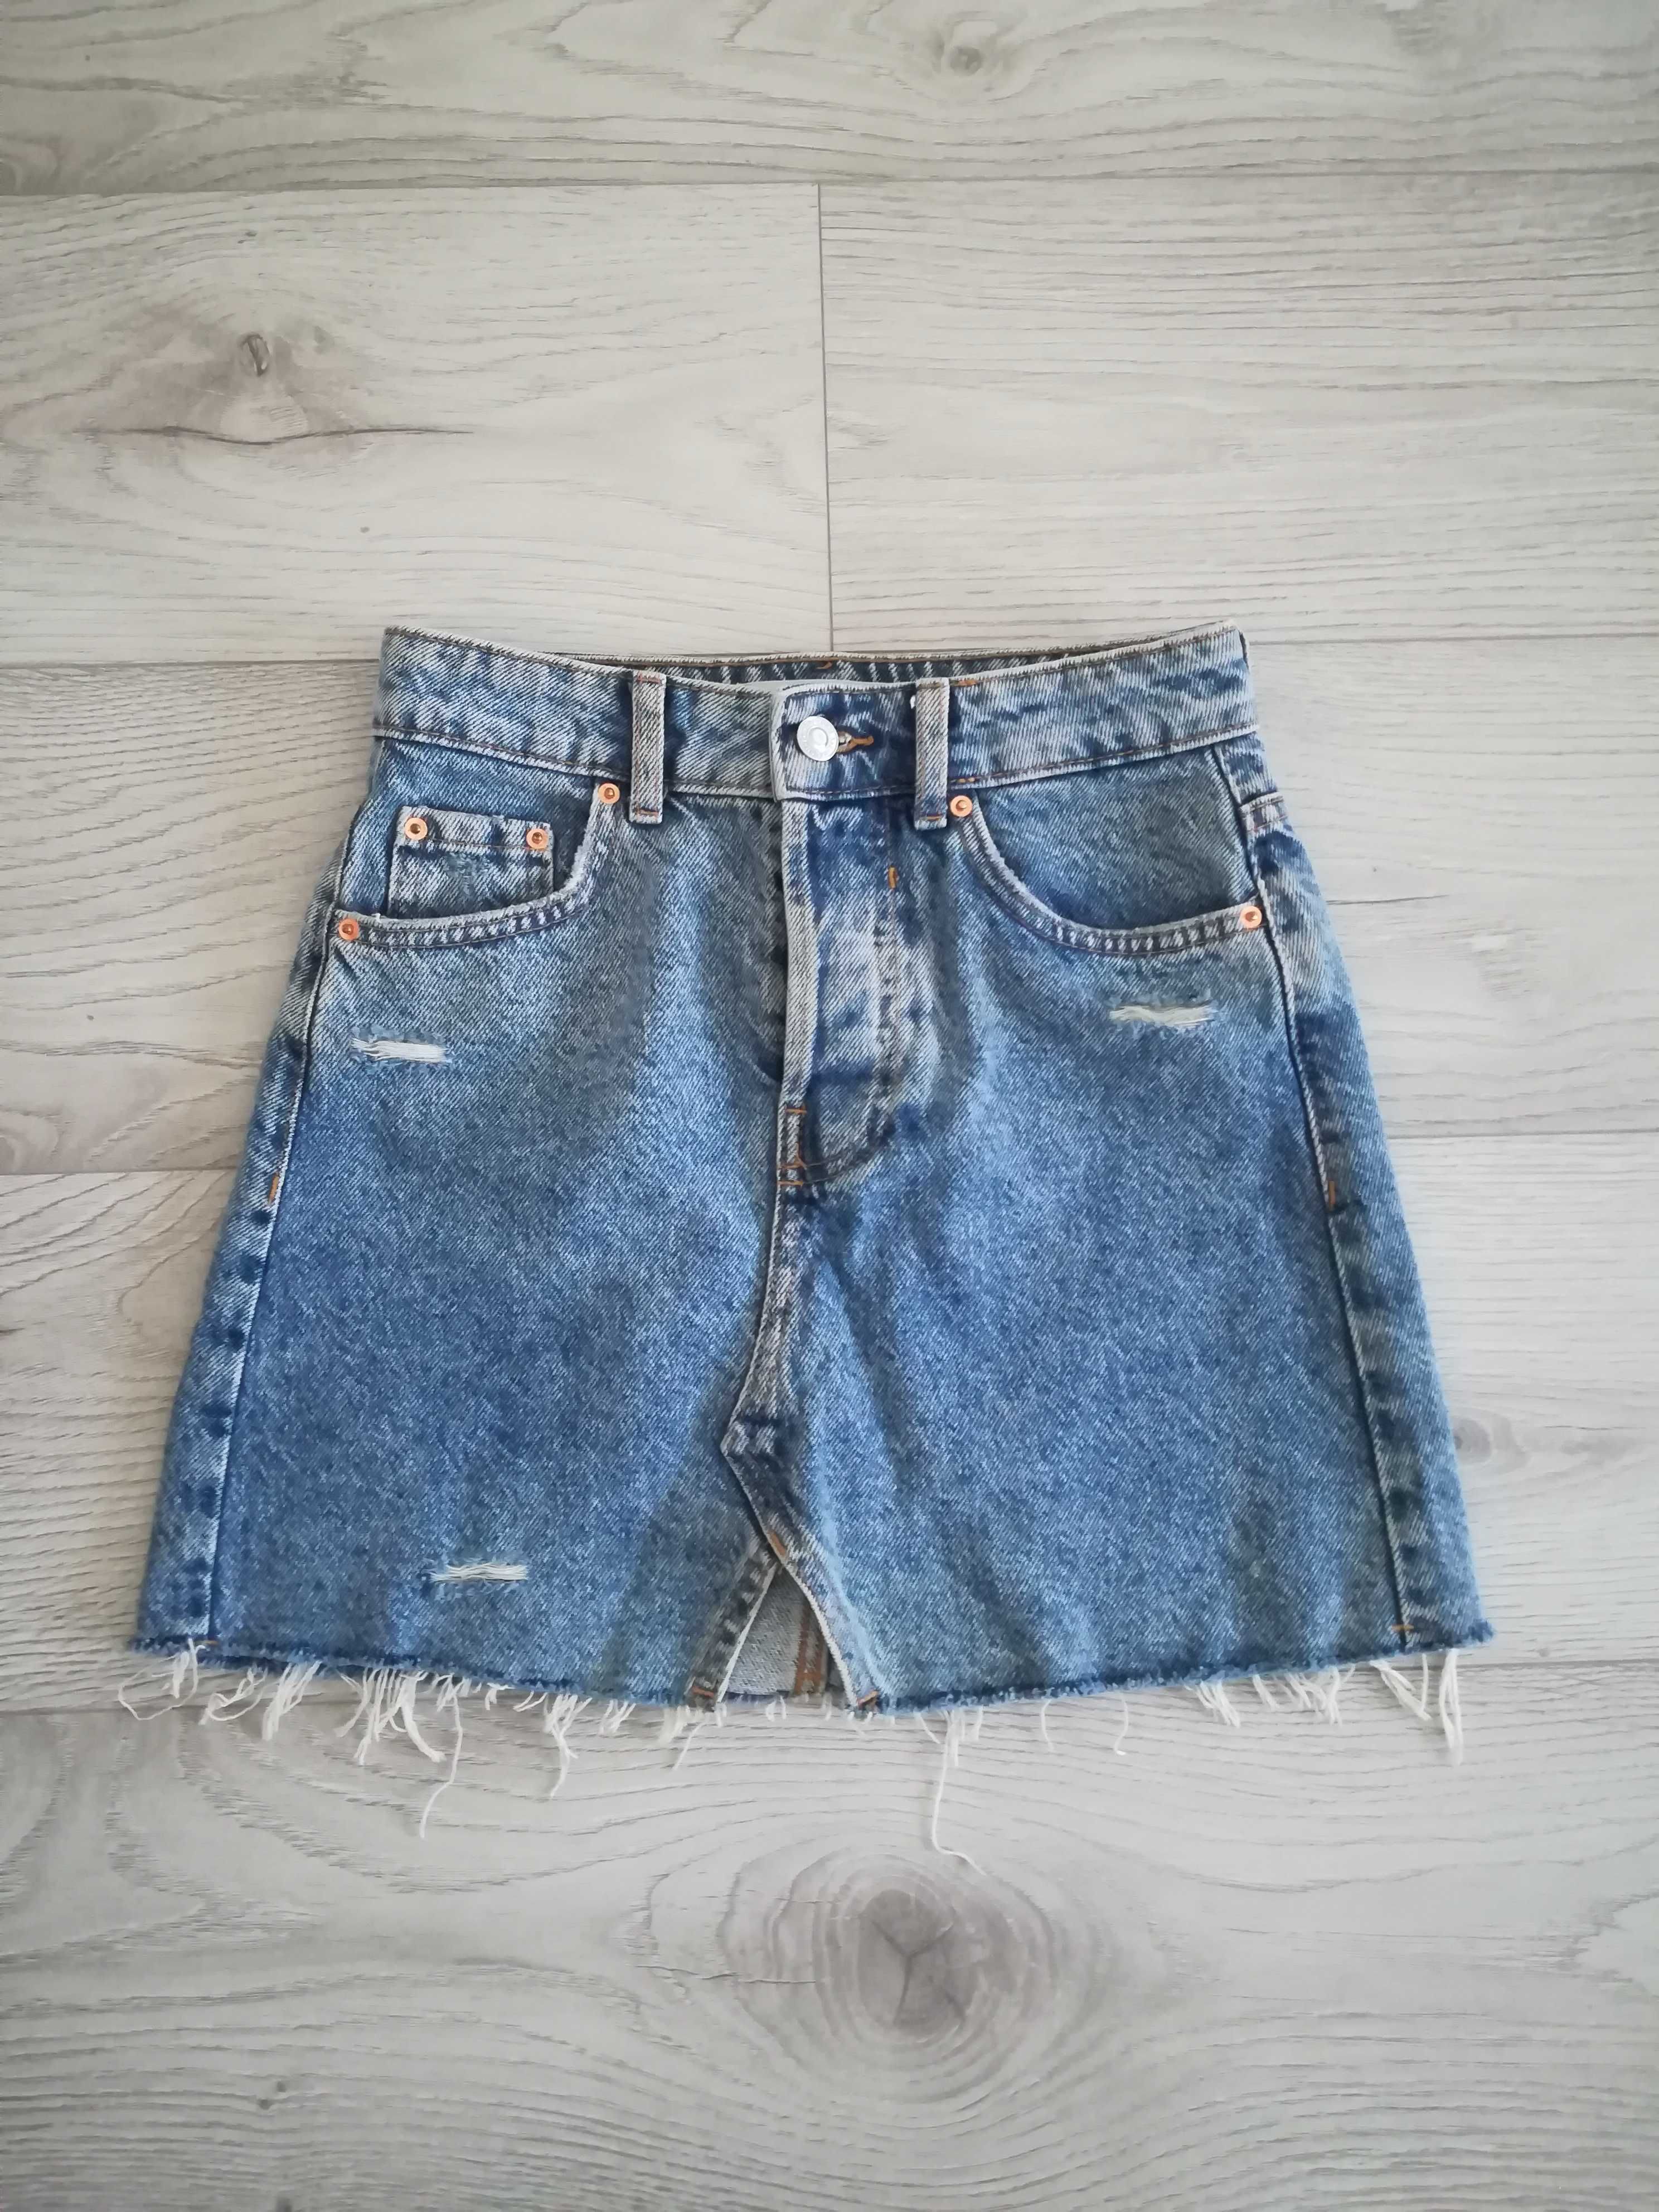 Spódnica jeansowa Bershka